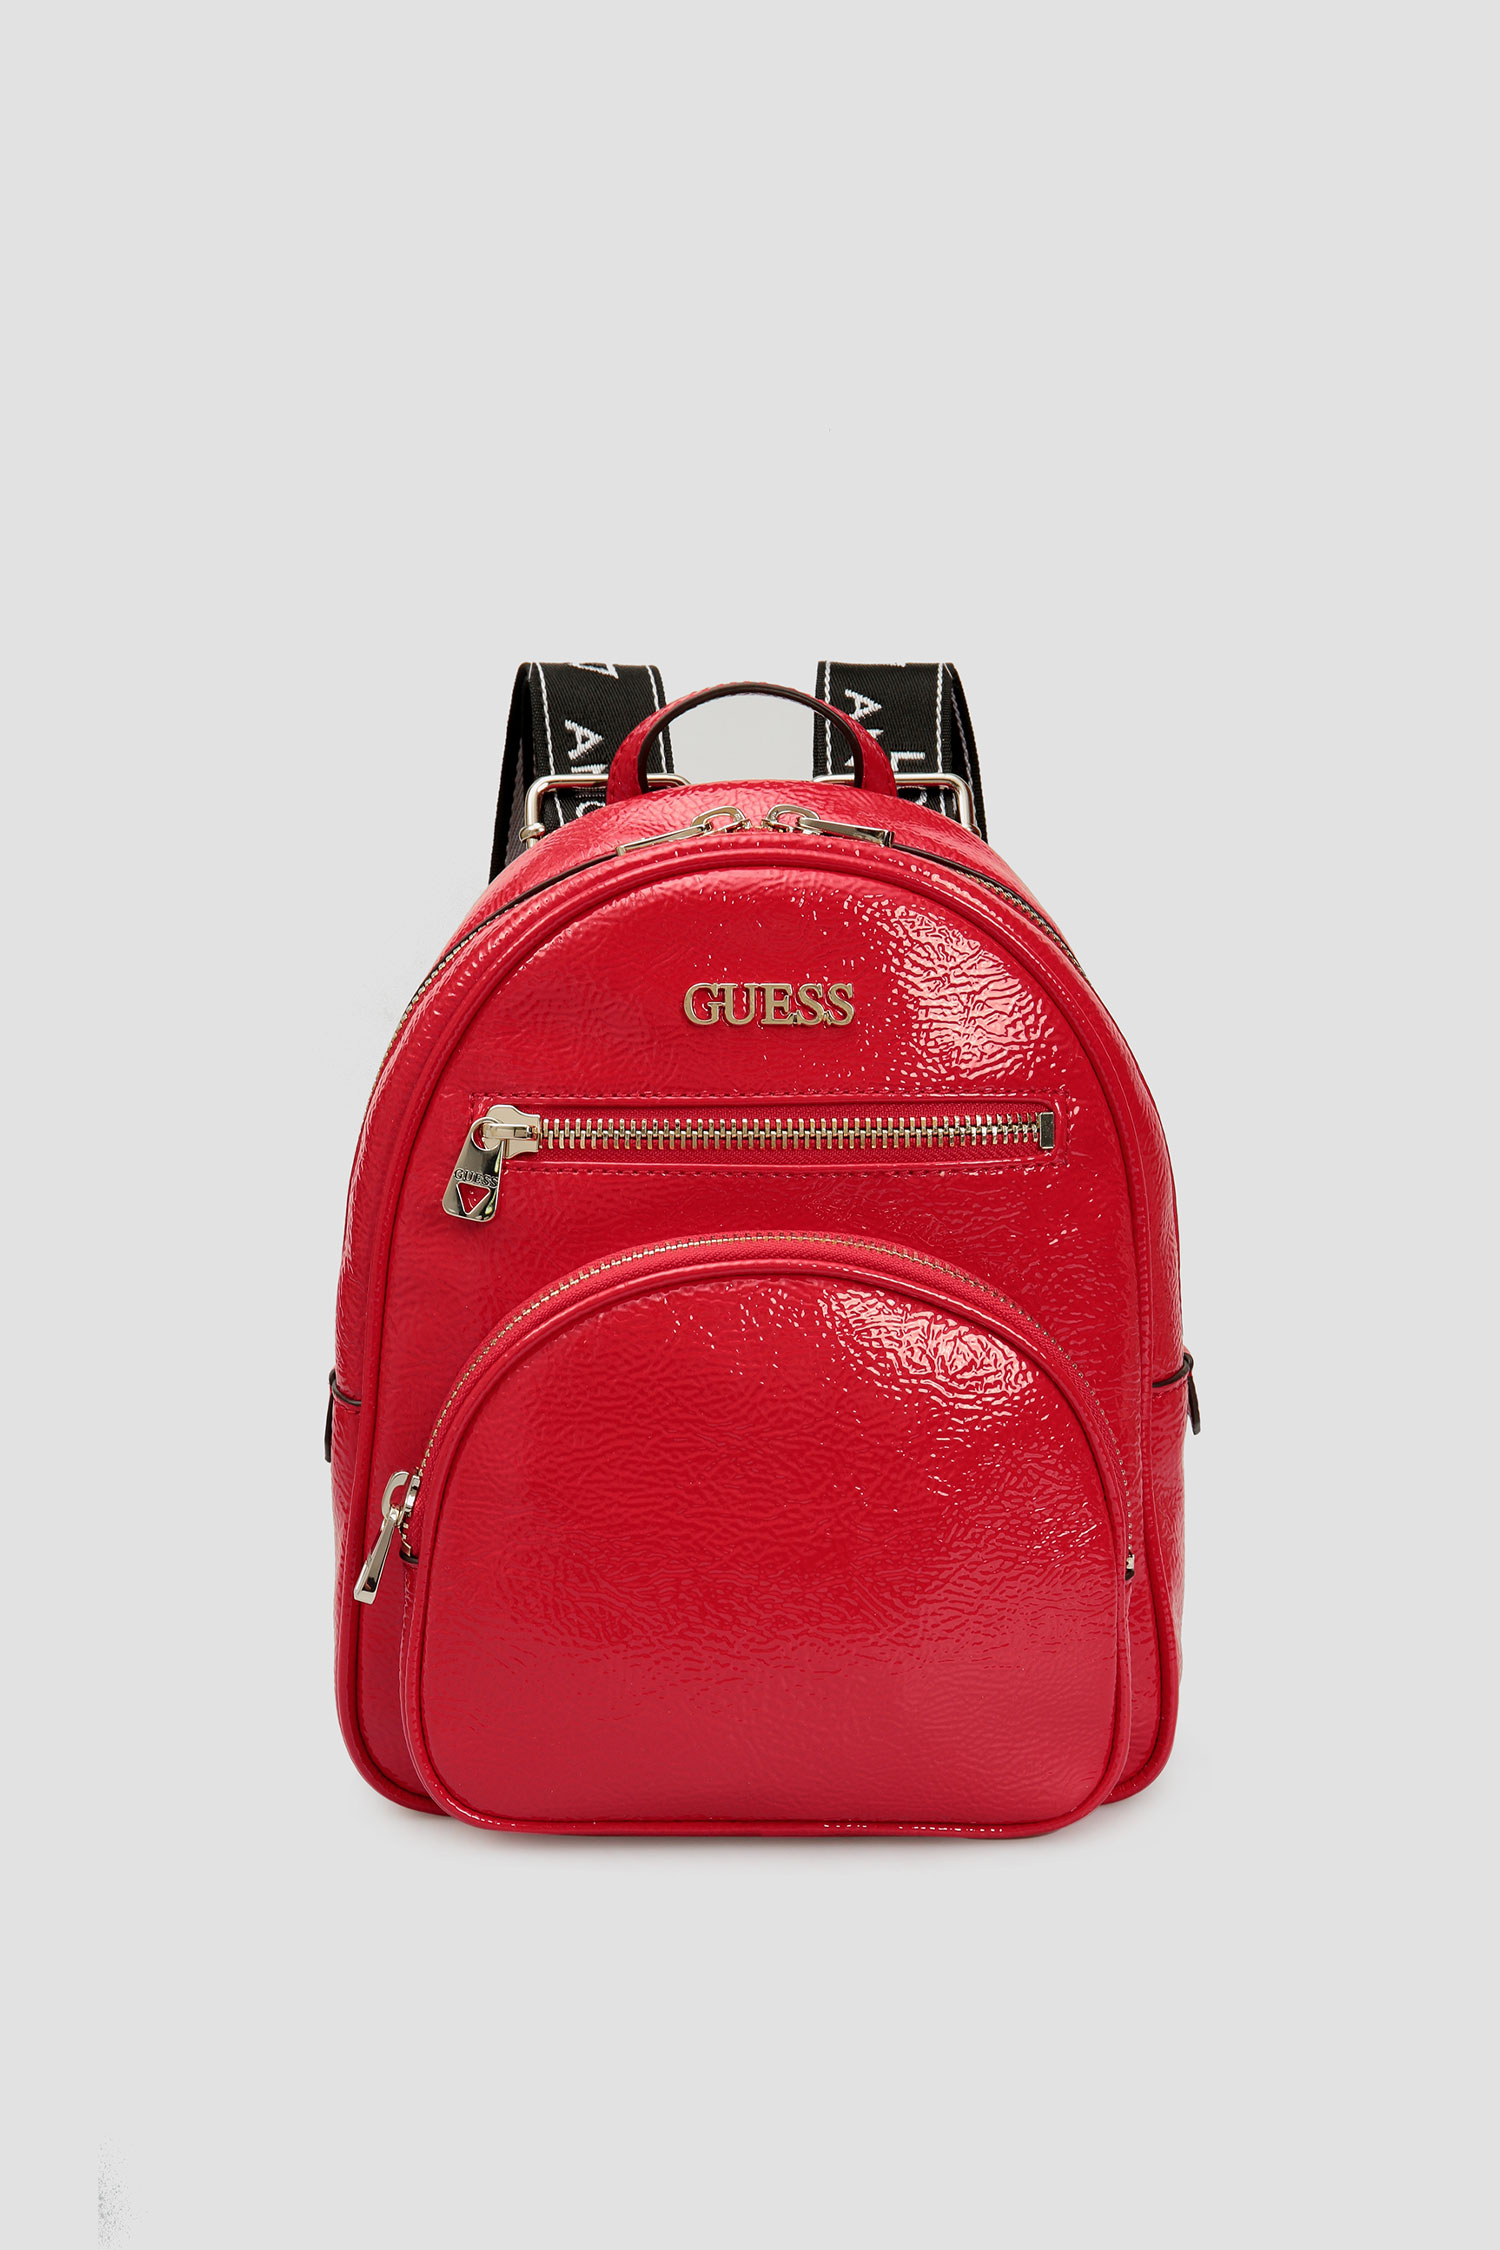 Красный рюкзак для девушек Guess HWPG77.50320;RED